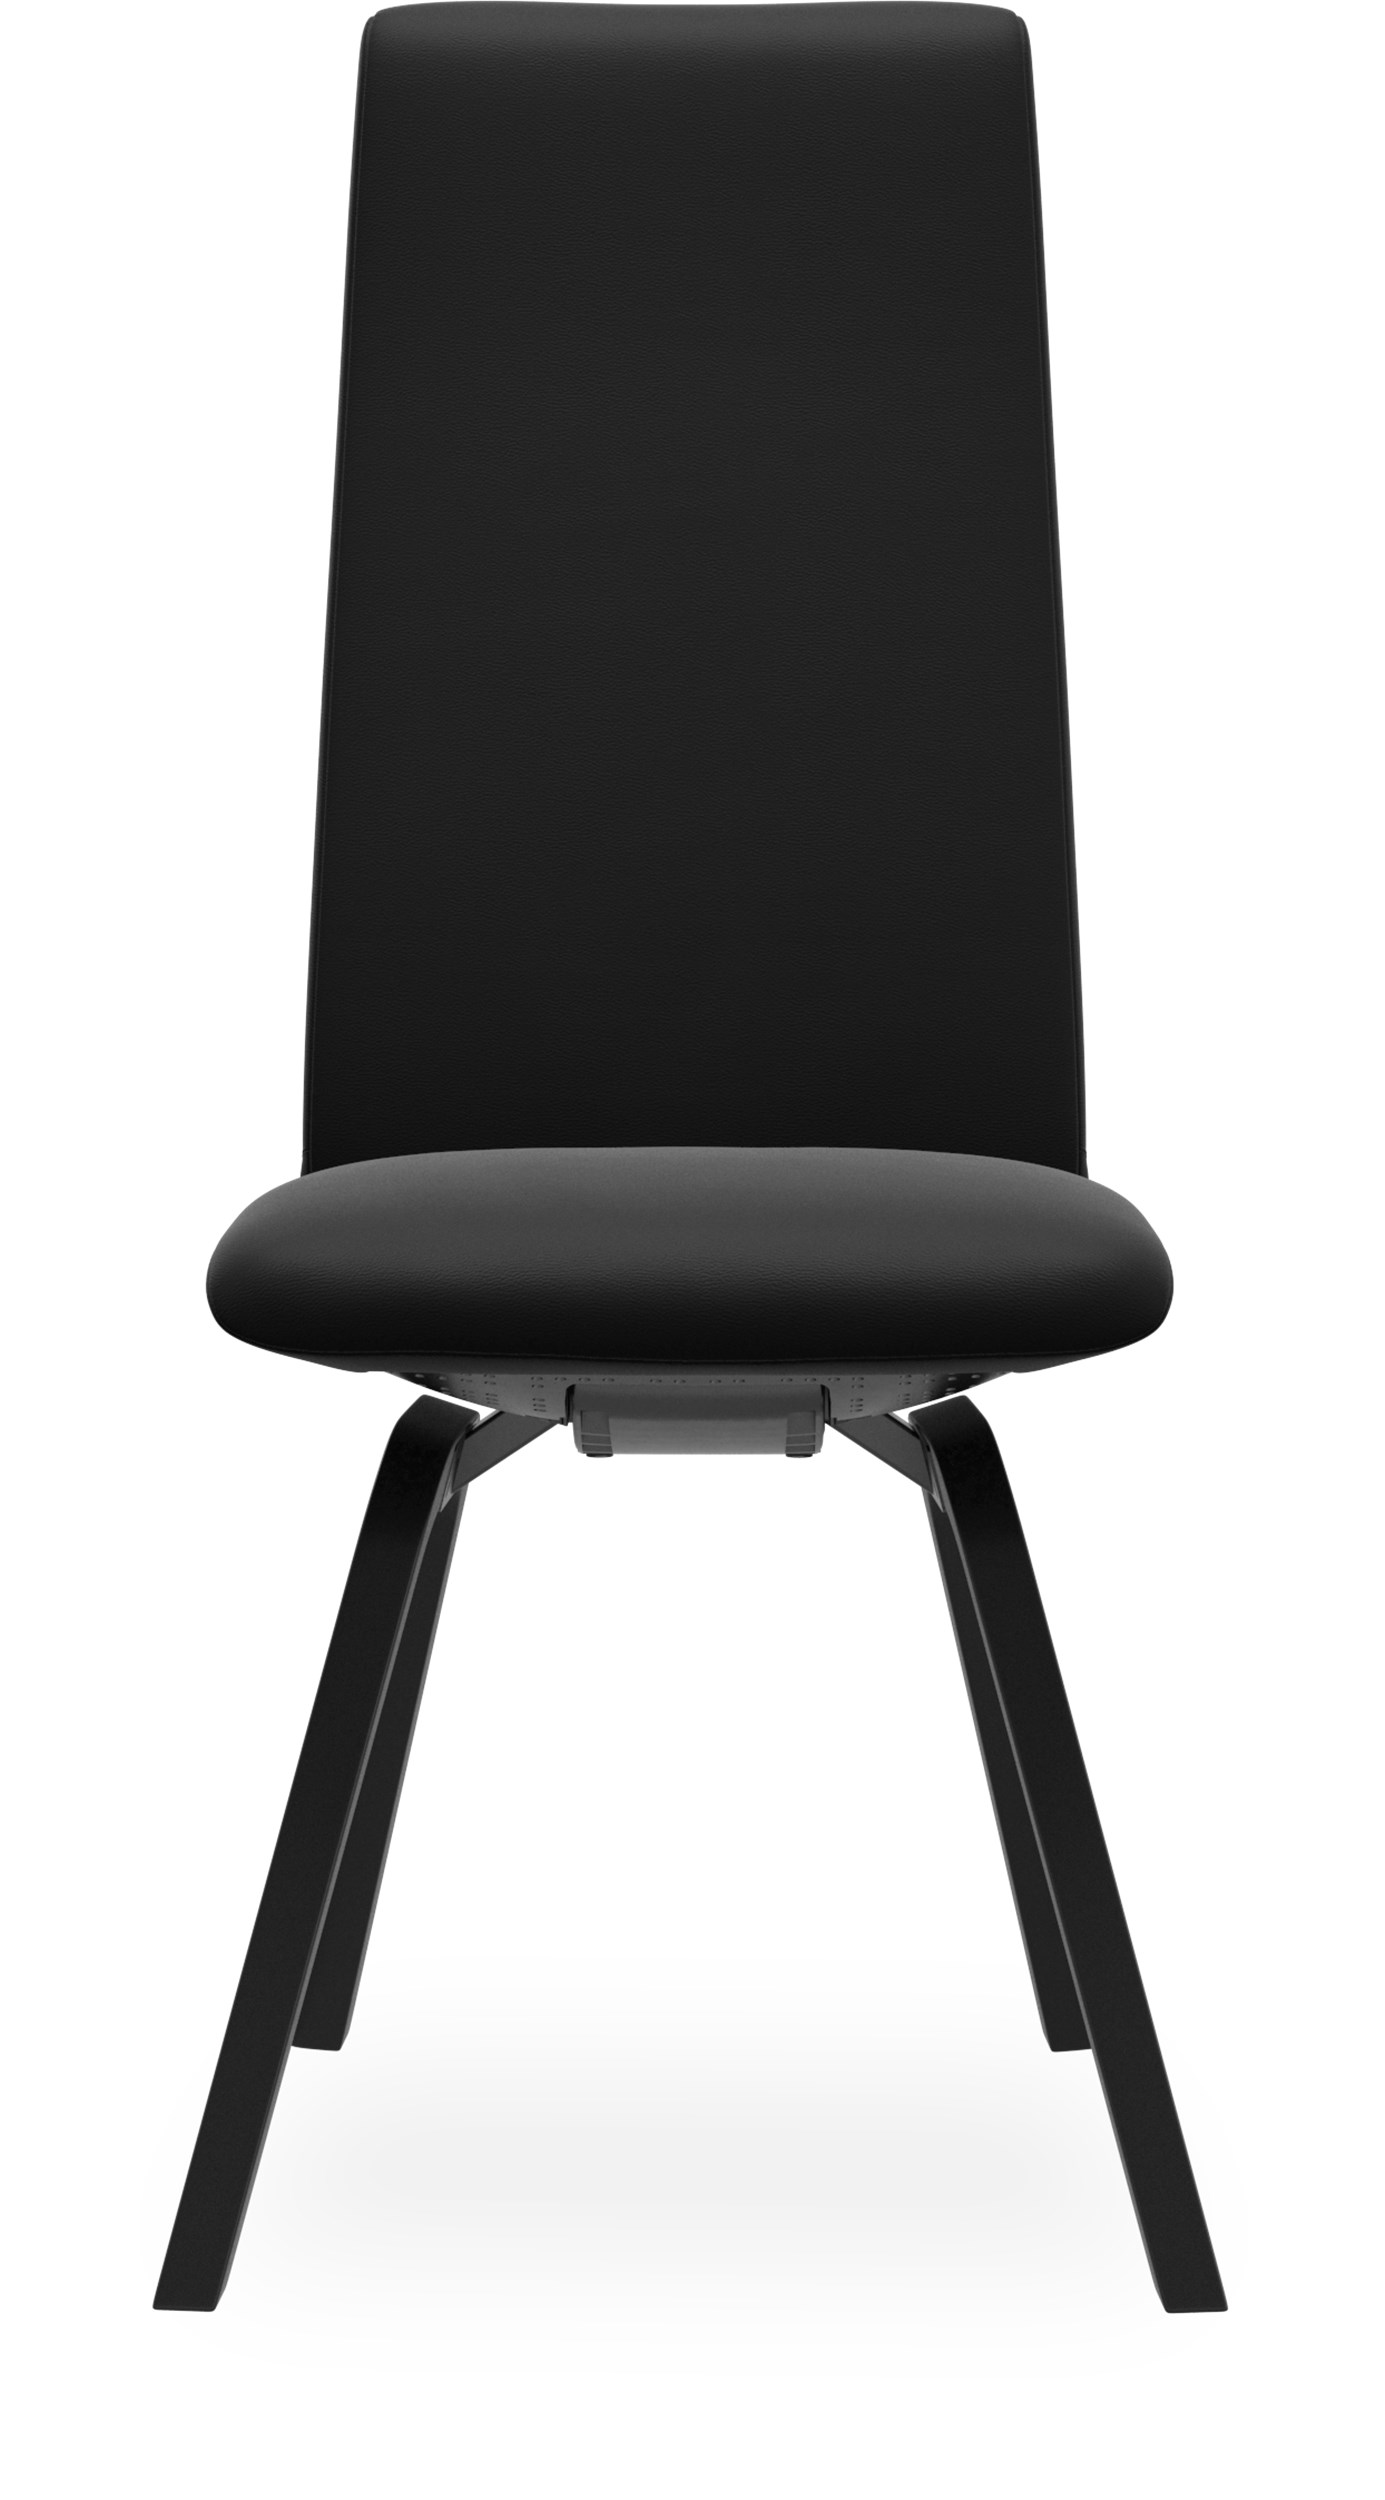 Stressless M D200 Laurel high Spisebordsstol - Paloma 9419 Black læder og stel i lakeret, sortbejdset formspændt bøg